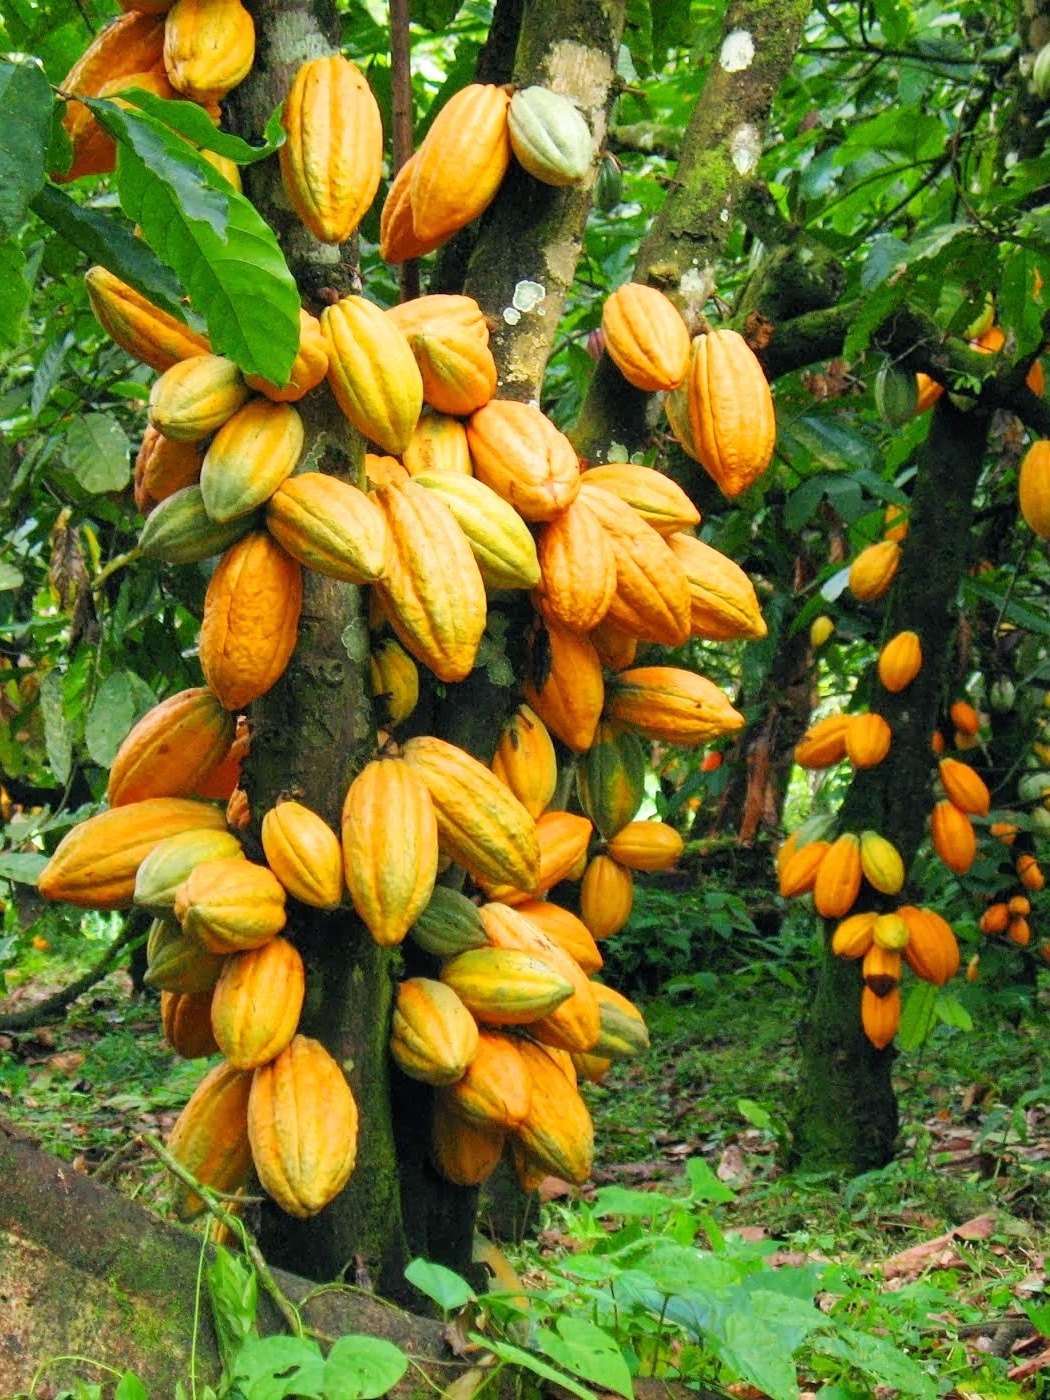 cocoa trees